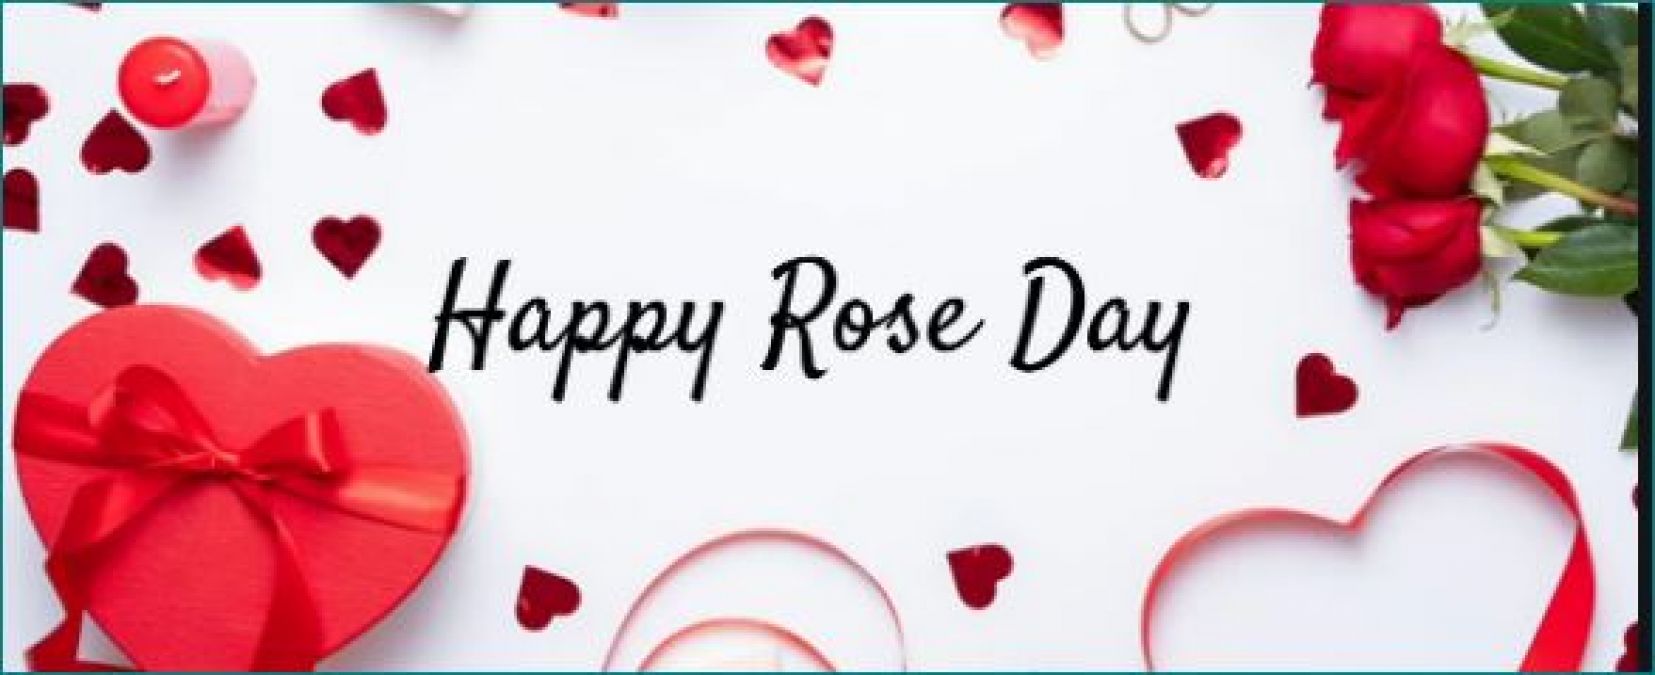 Rose Day: इन शायरियों से बनाए अपने पार्टनर का दिन खुशनुमा